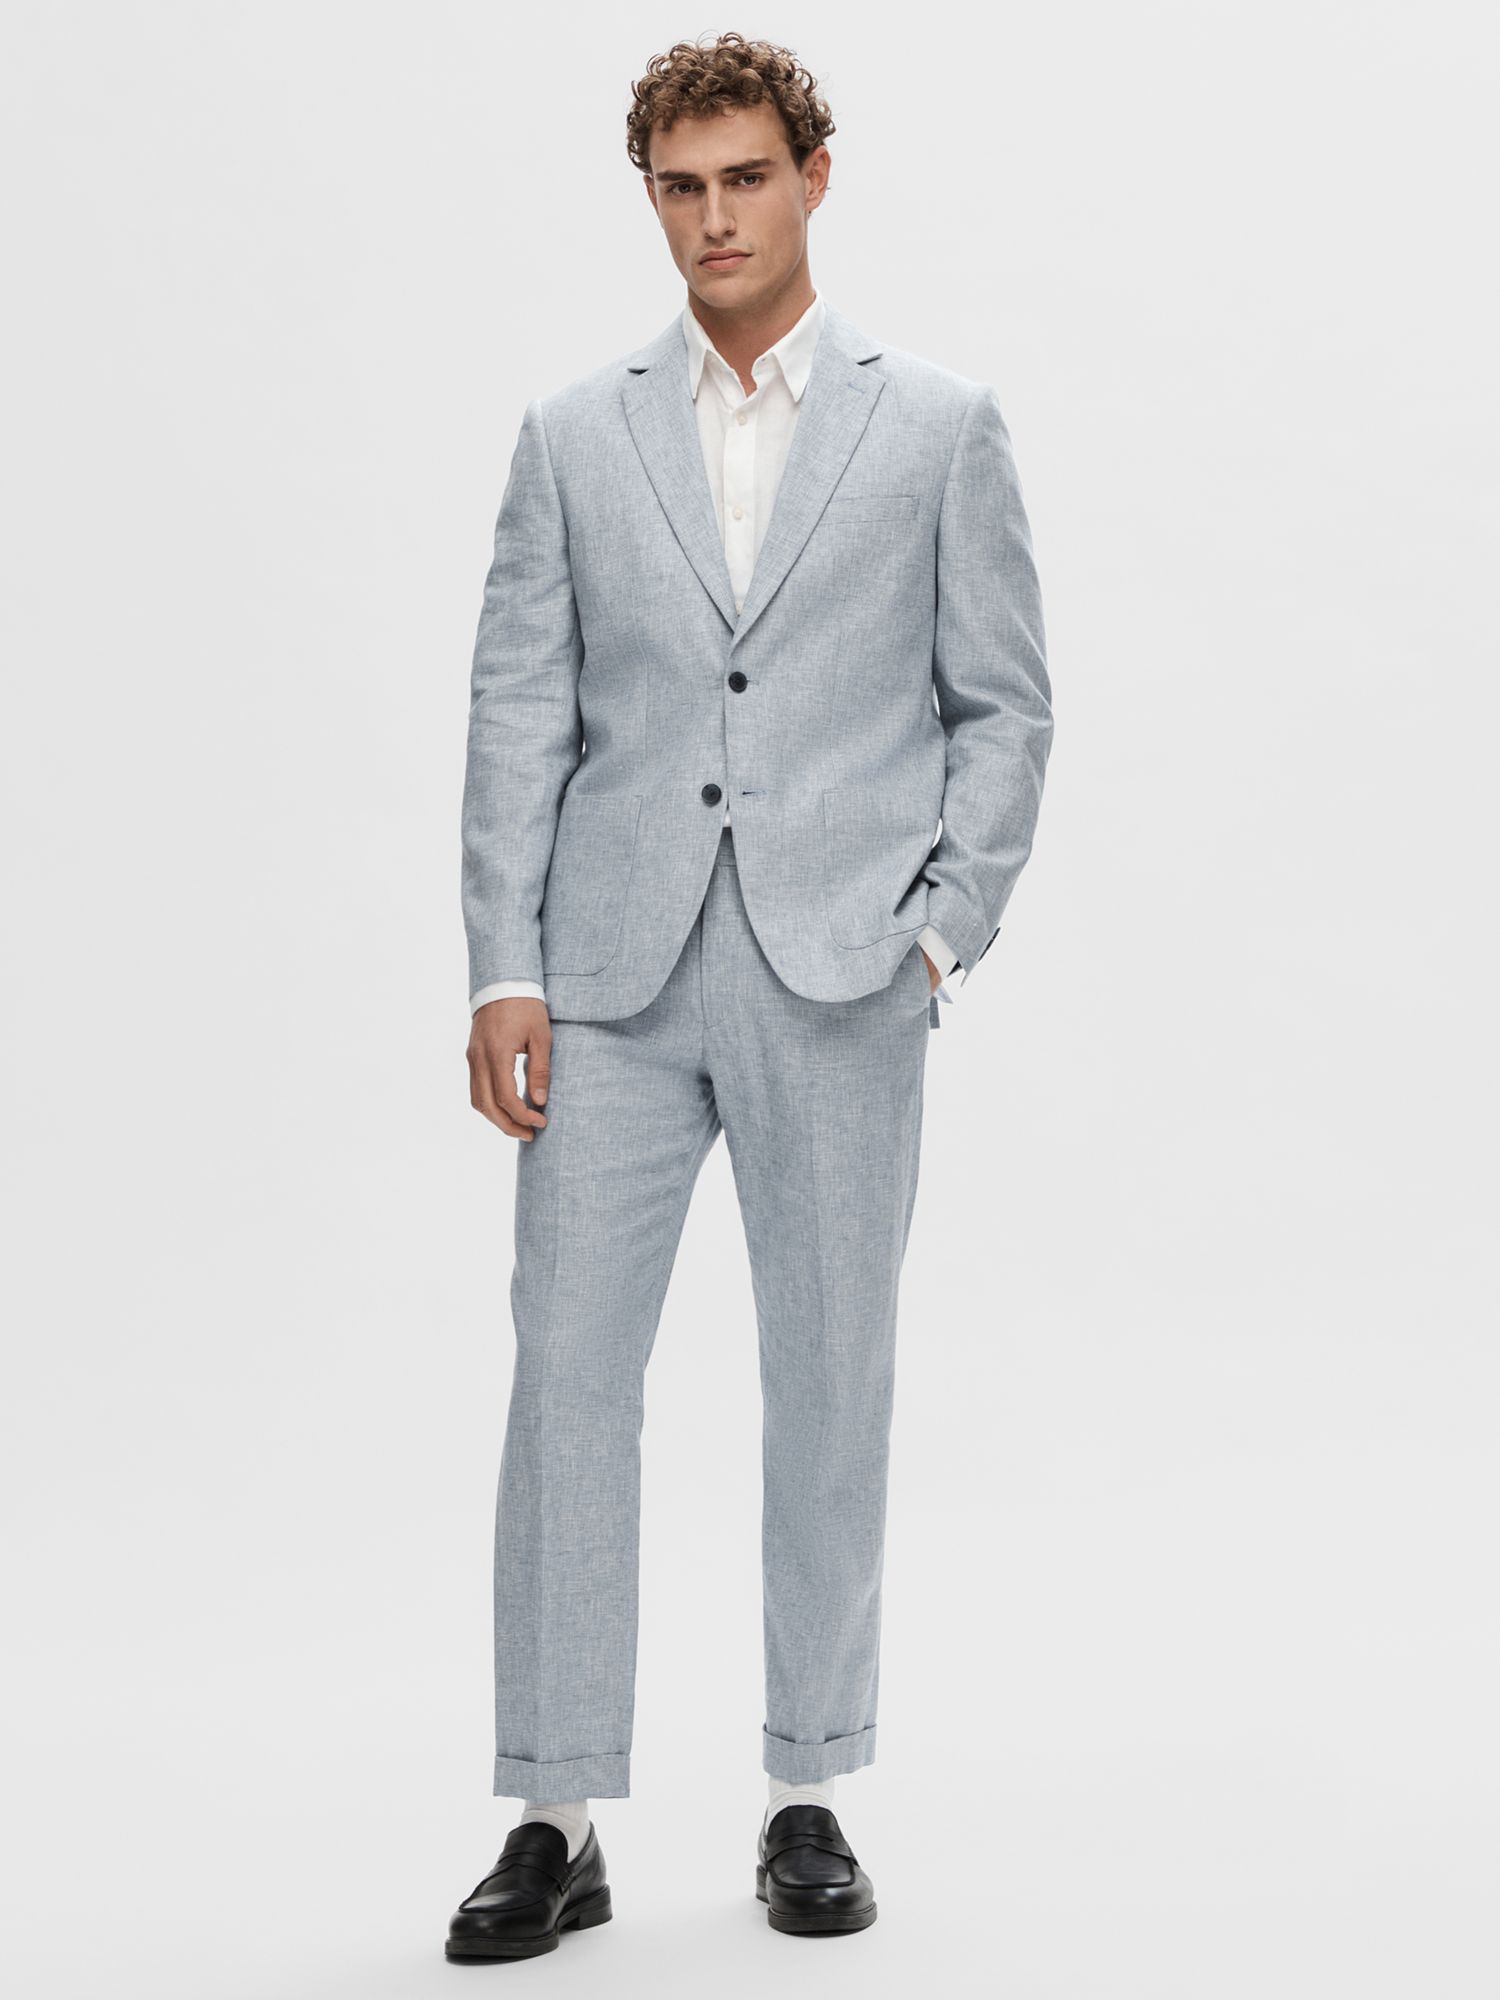 Buy SELECTED HOMME Regular Fit Linen Blazer, Light Blue Online at johnlewis.com